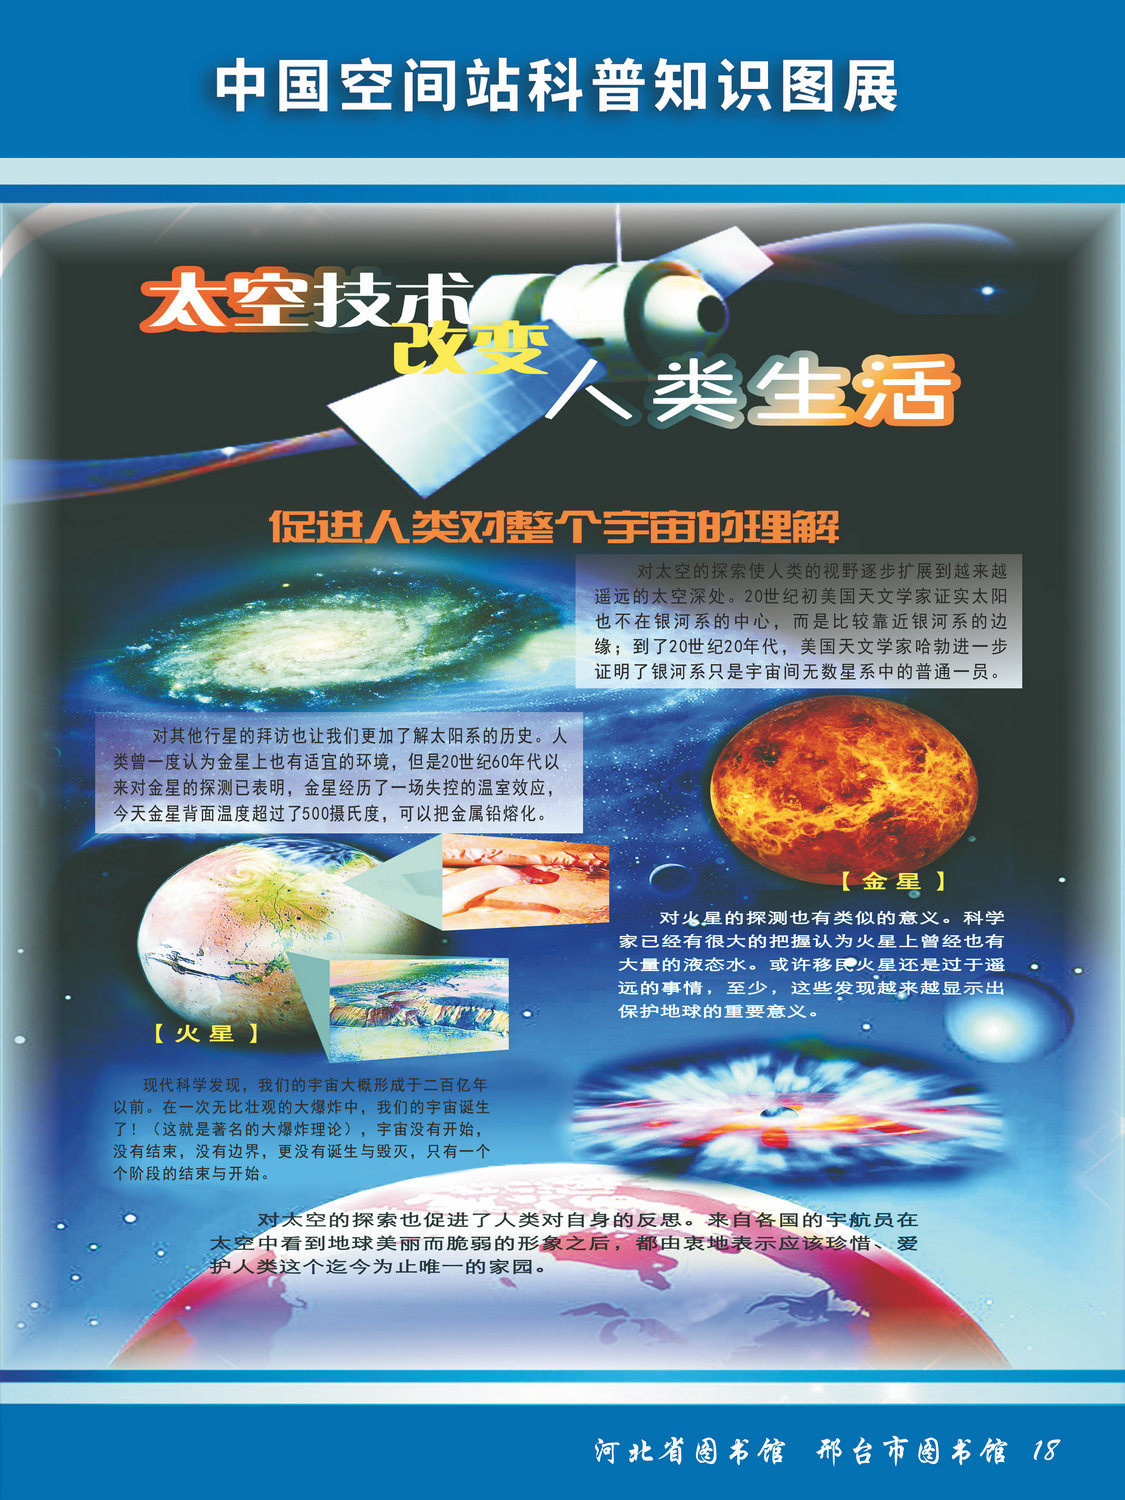 中国空间站科普知识图文展_图18